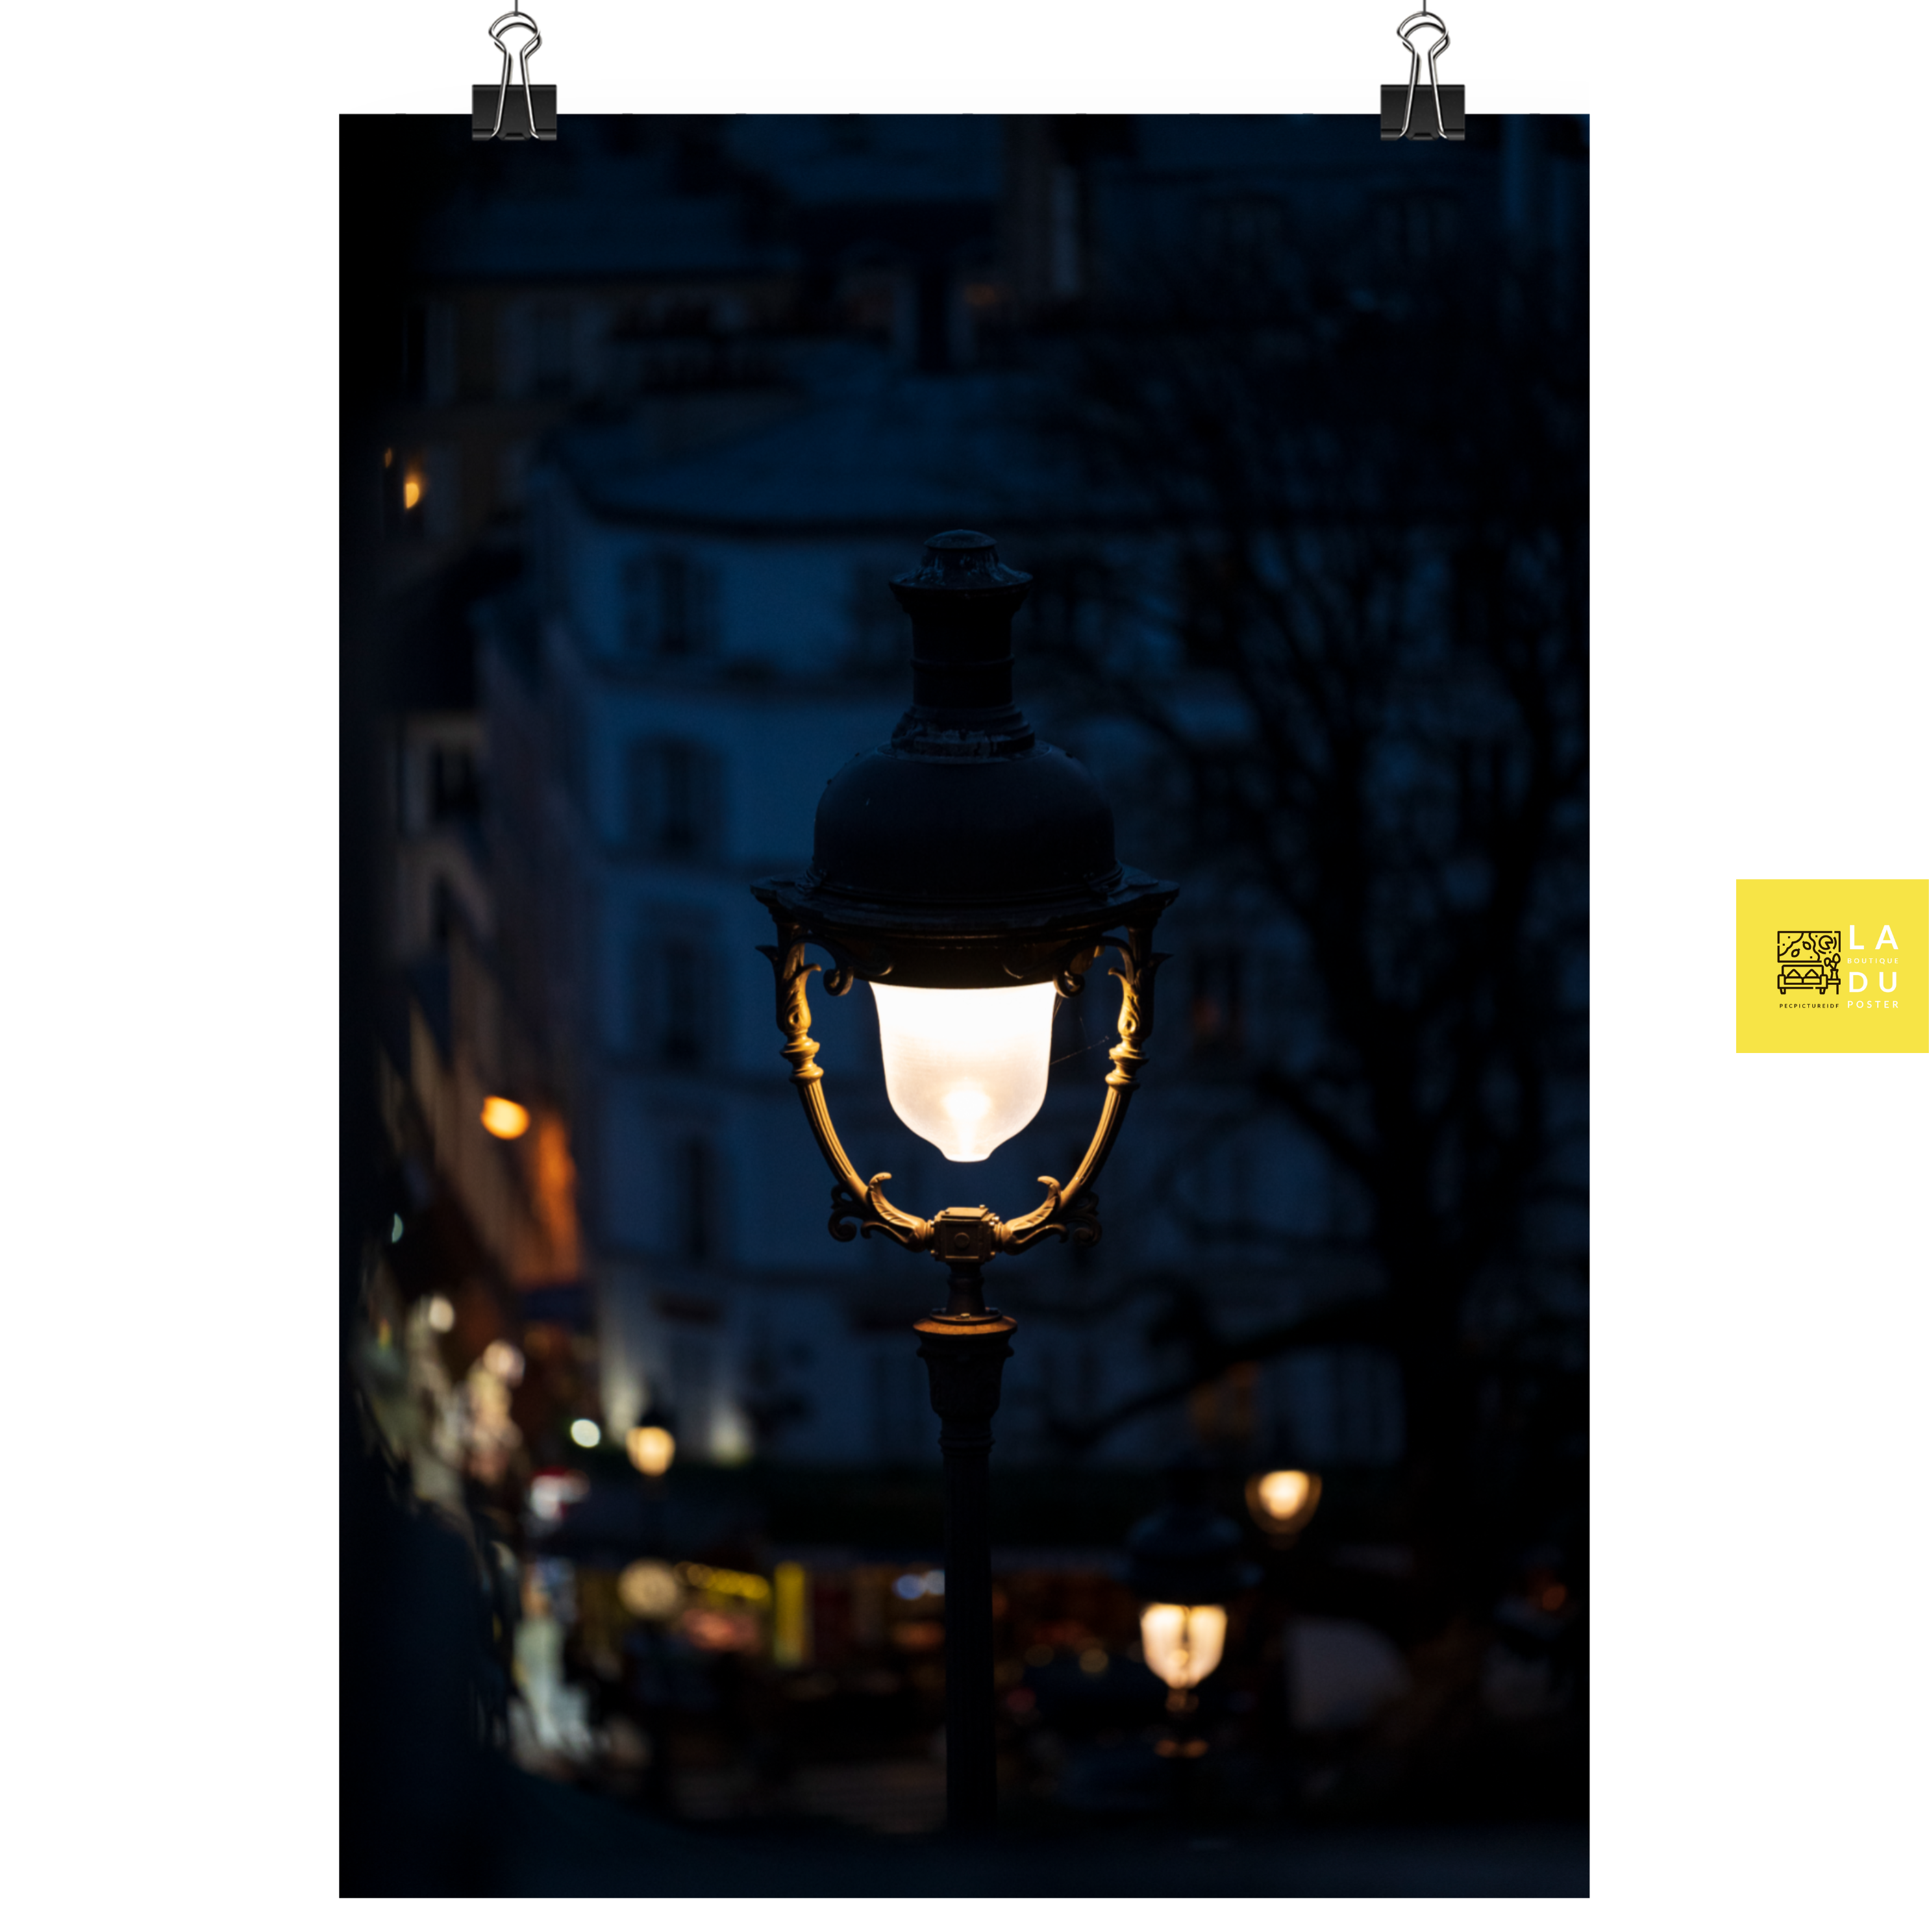 Lanterne Parisienne - Poster - La boutique du poster Français